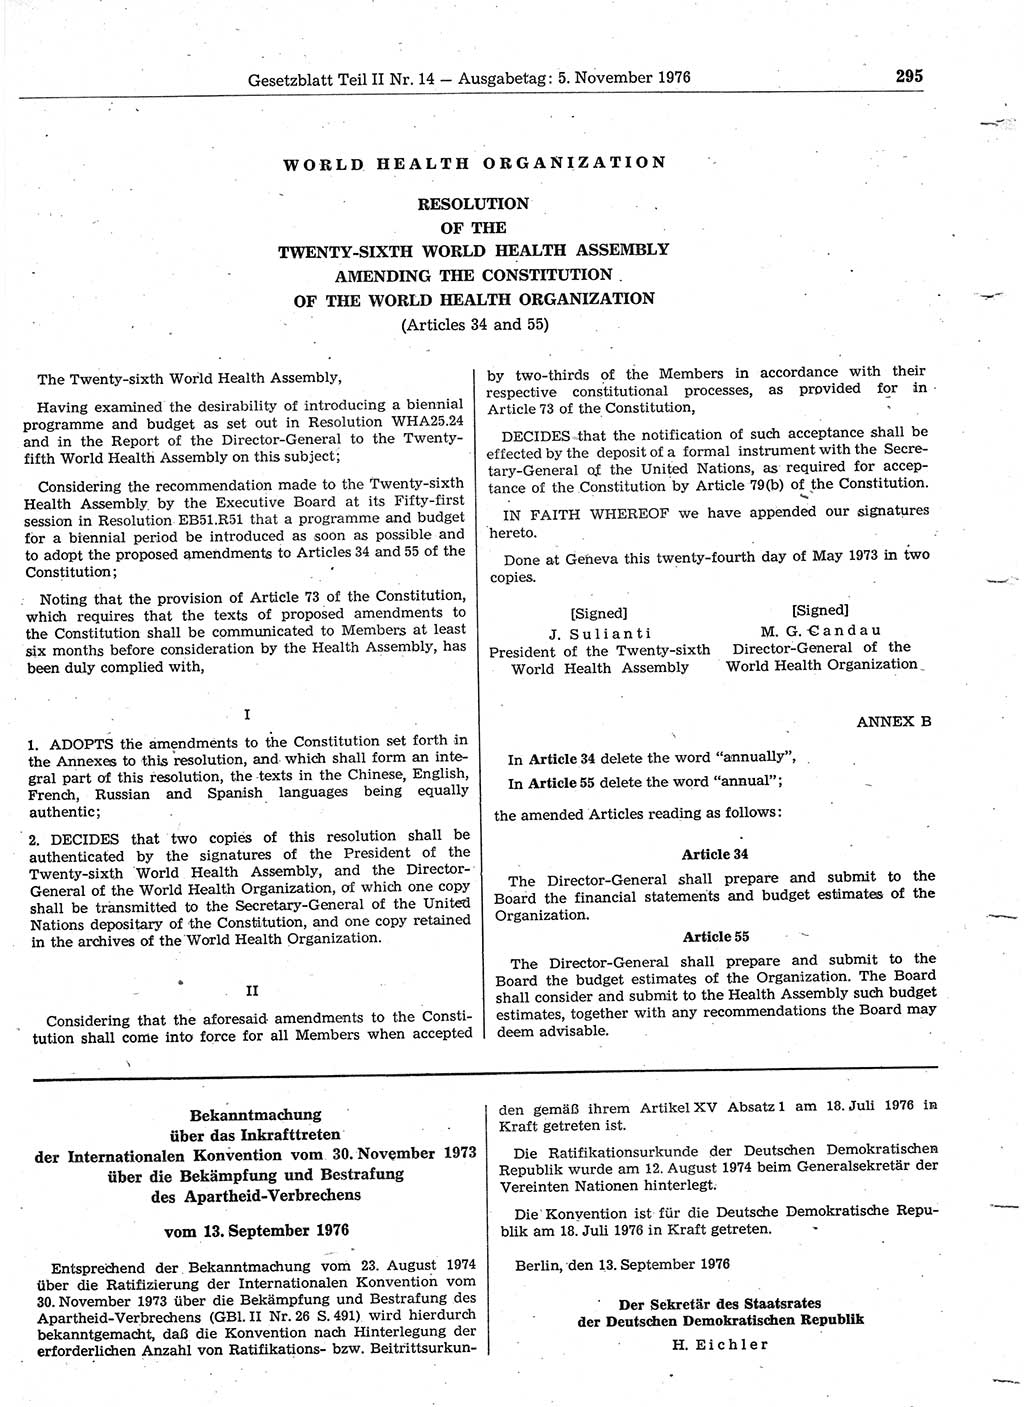 Gesetzblatt (GBl.) der Deutschen Demokratischen Republik (DDR) Teil ⅠⅠ 1976, Seite 295 (GBl. DDR ⅠⅠ 1976, S. 295)